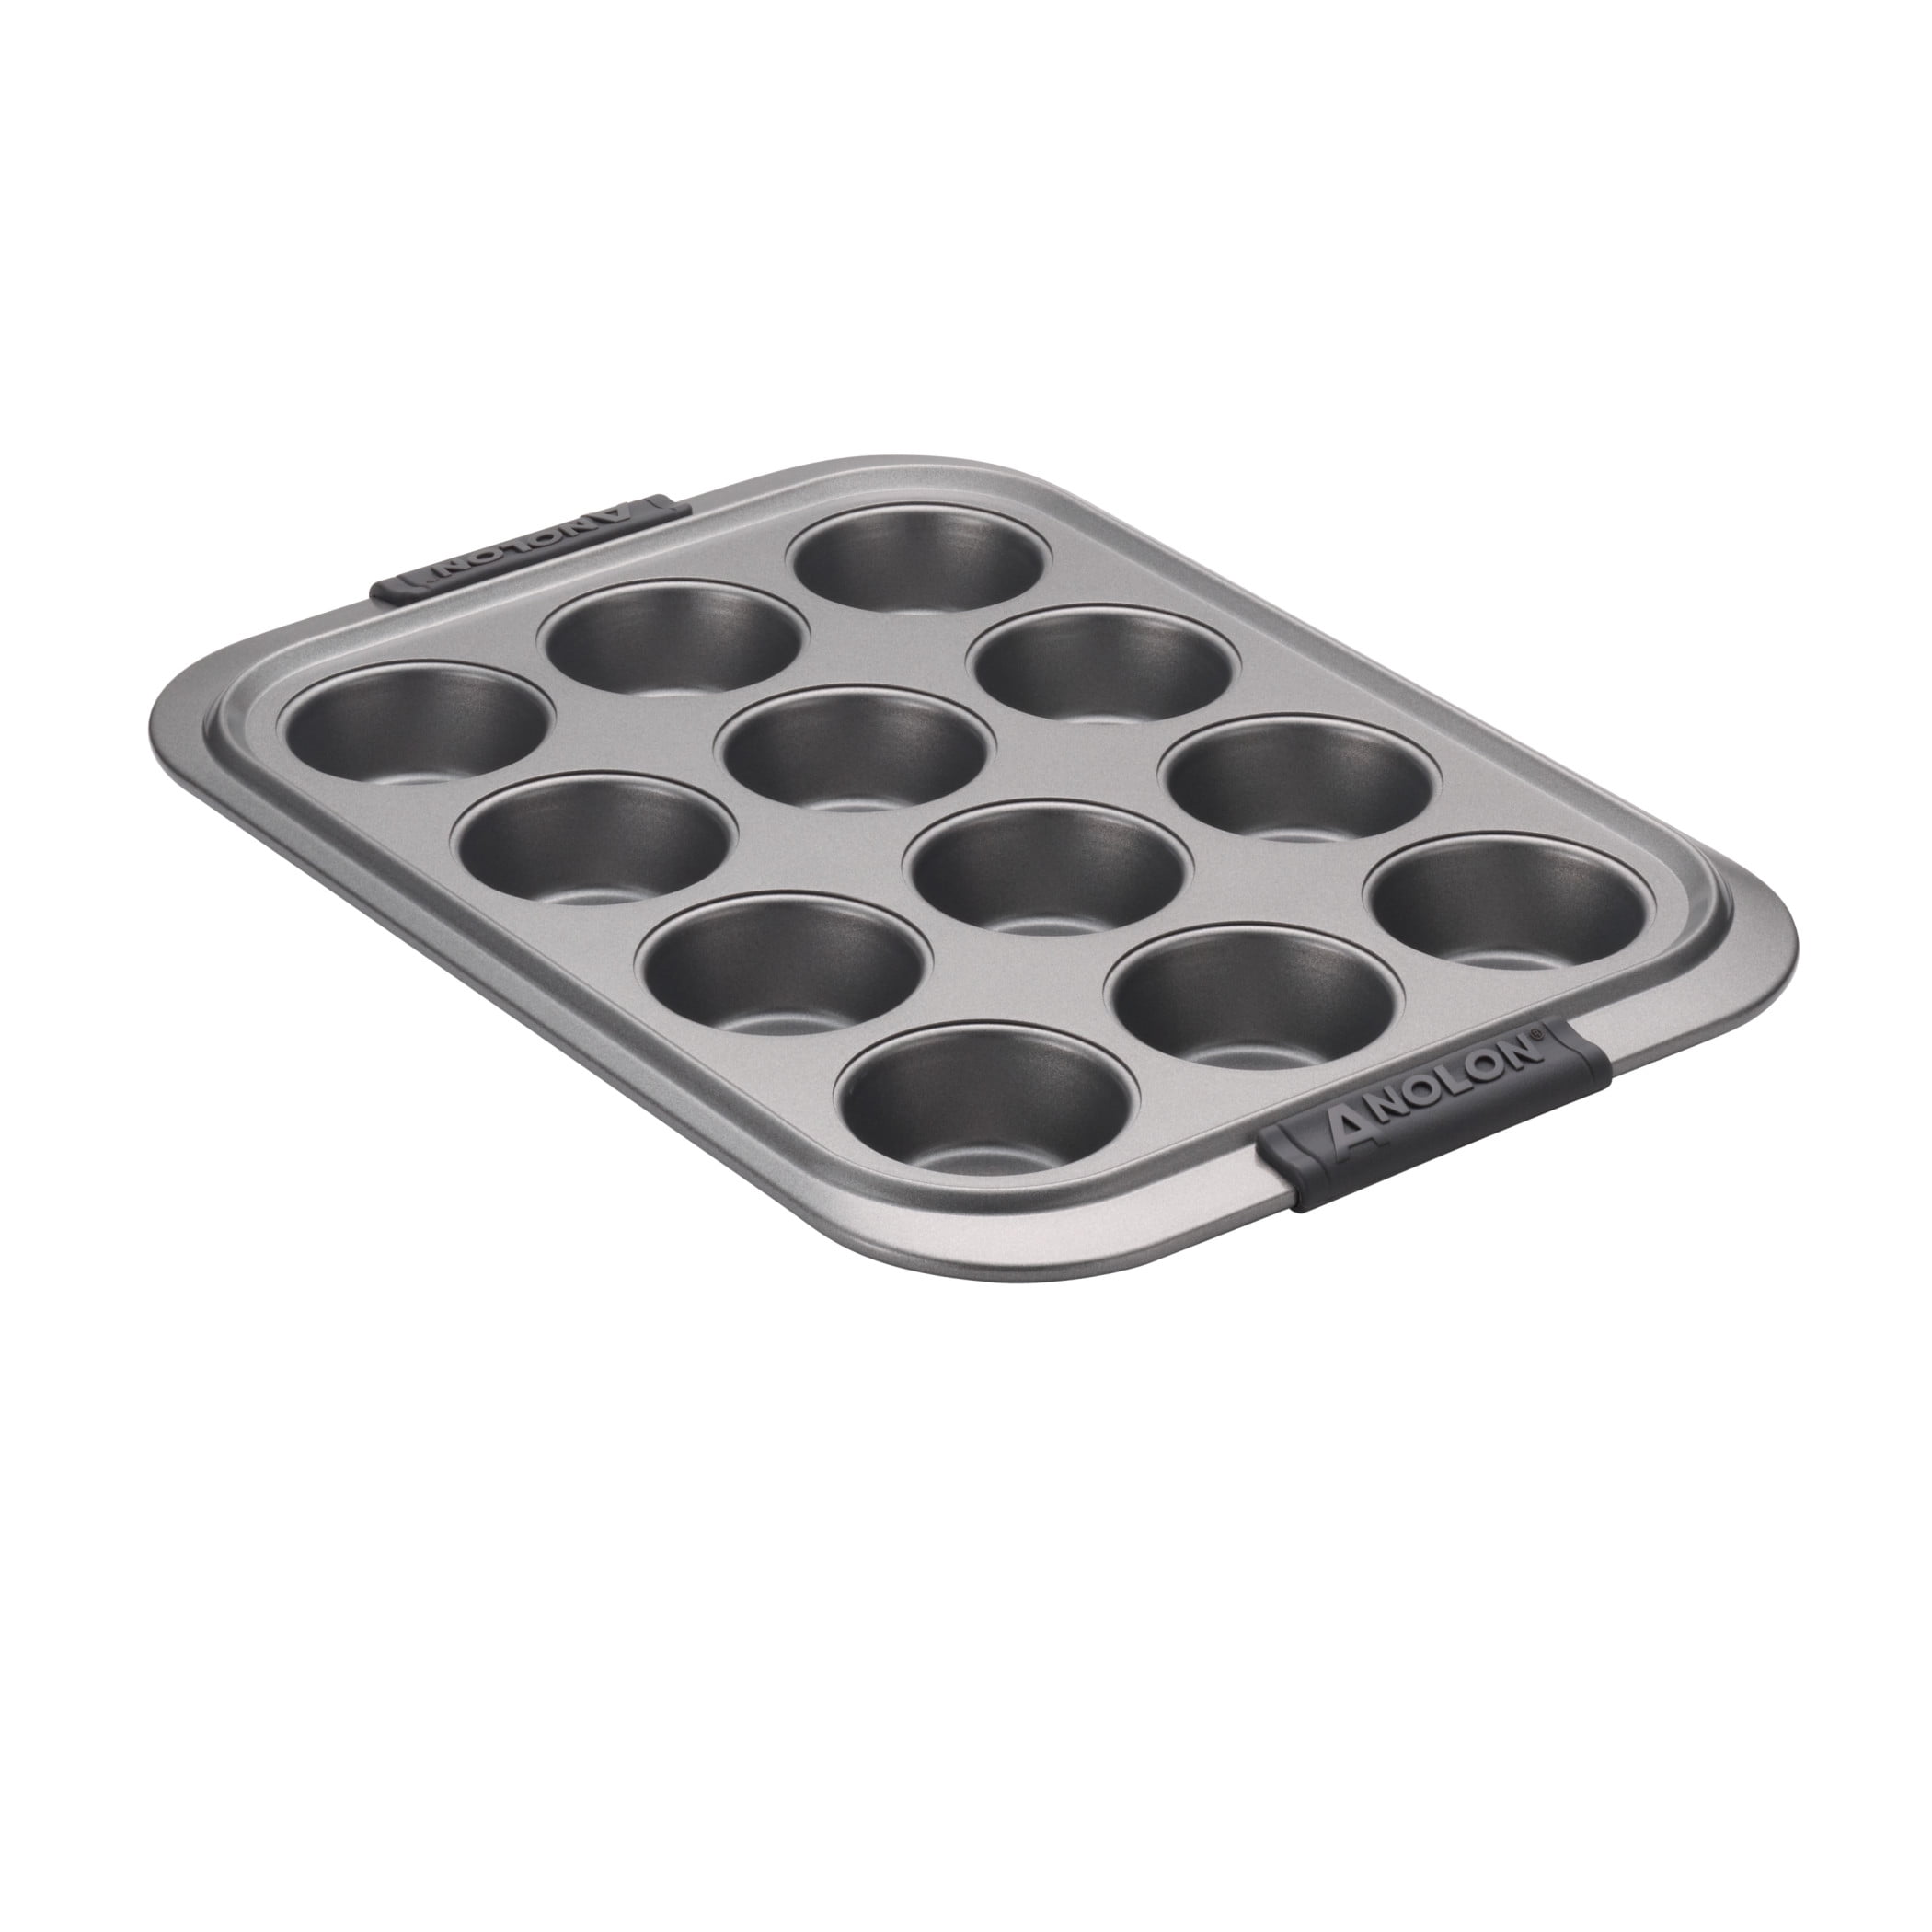 Saveur SELECTS 12-Cup Saveur Muffin Pan, Gray